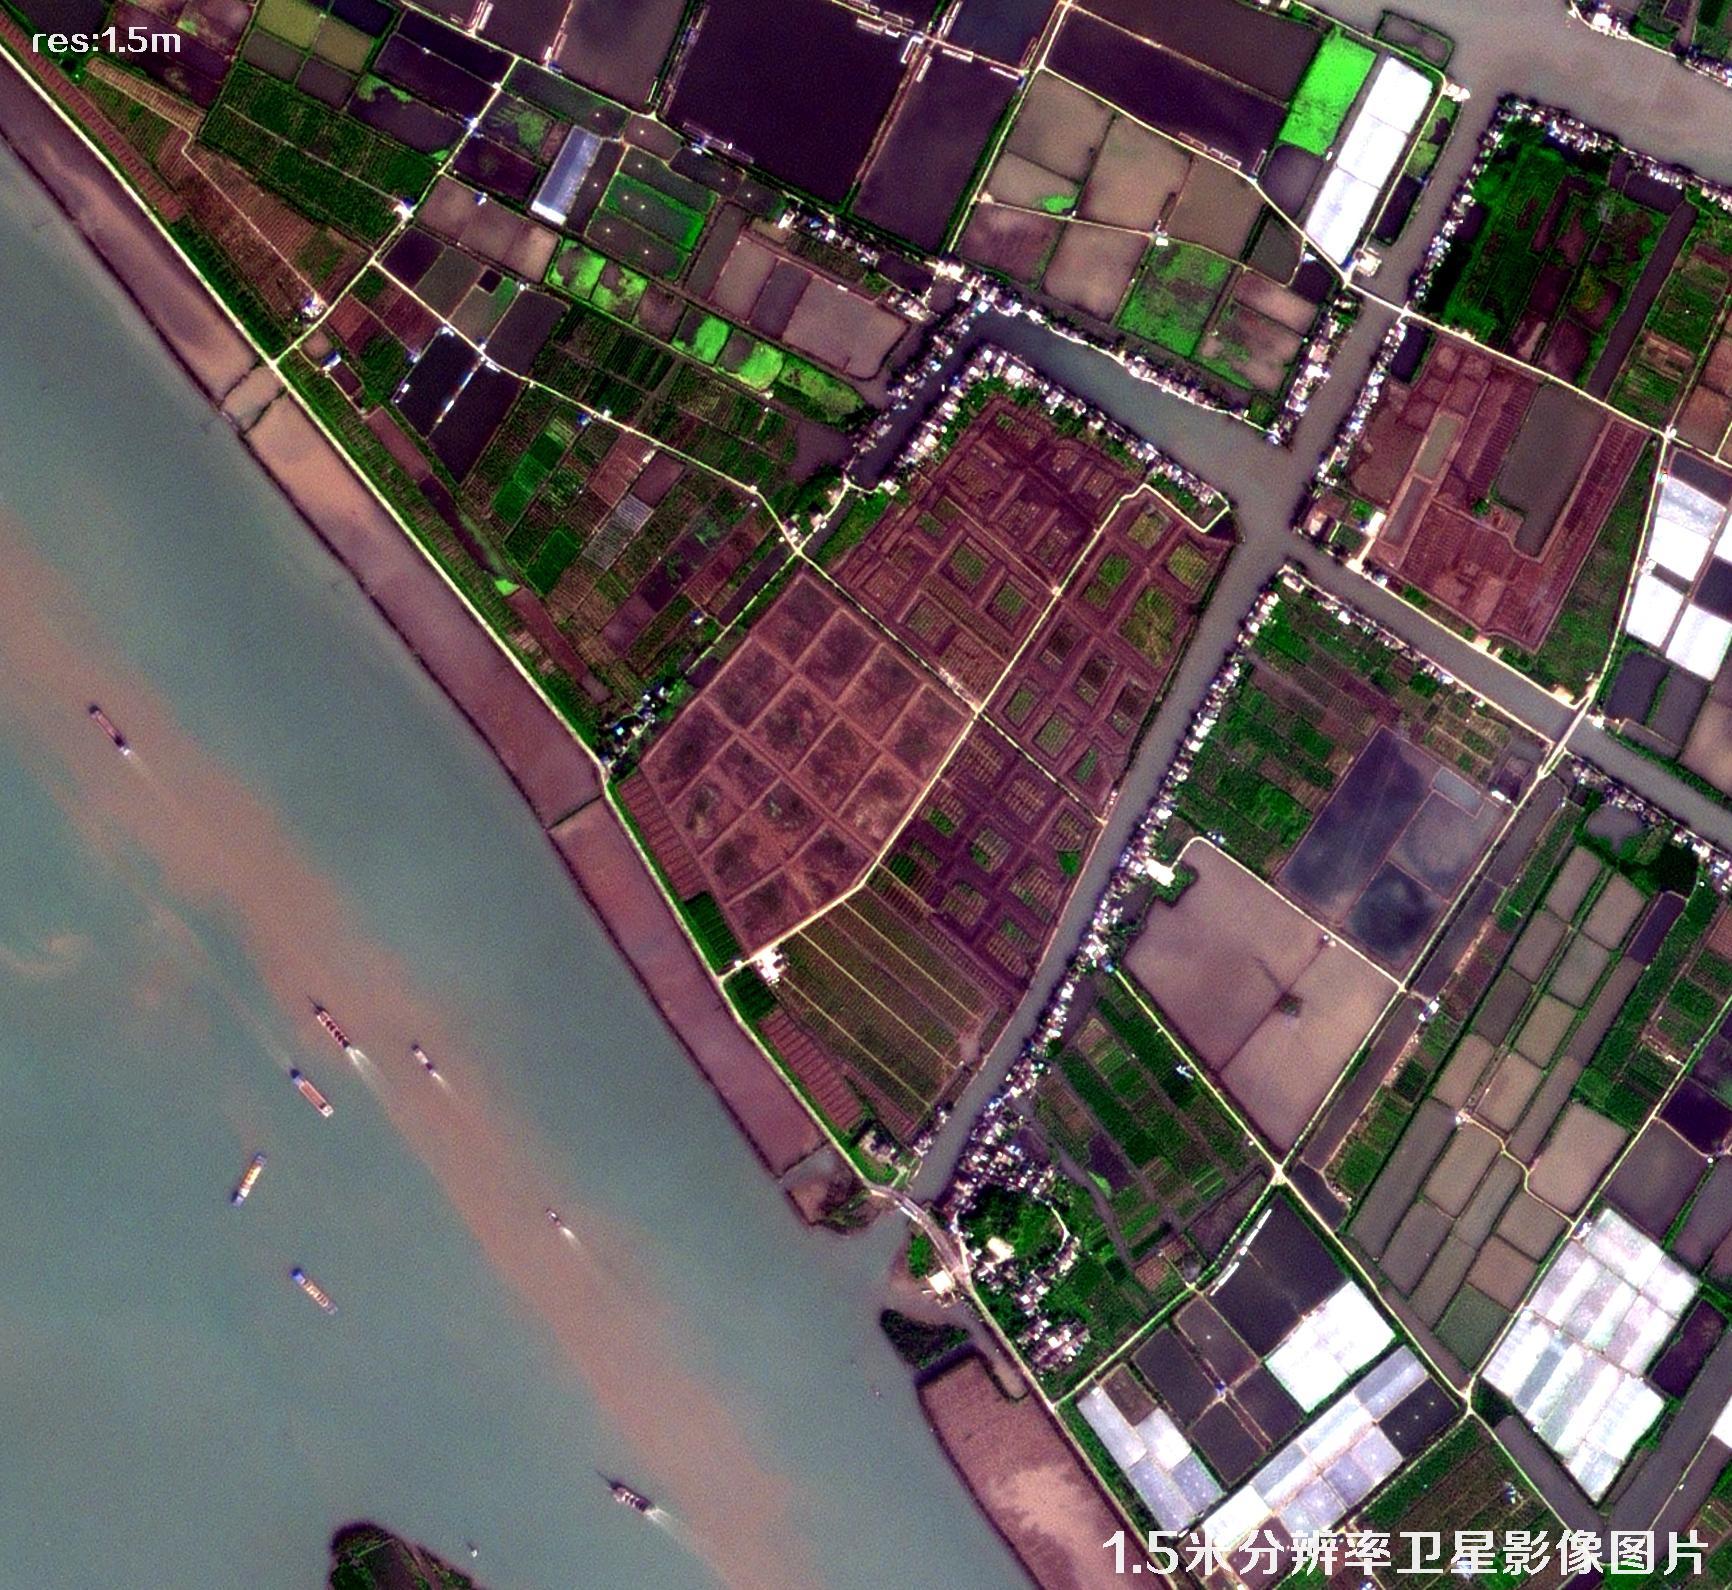 1.5米分辨率卫星拍摄的广东省中山市卫星图